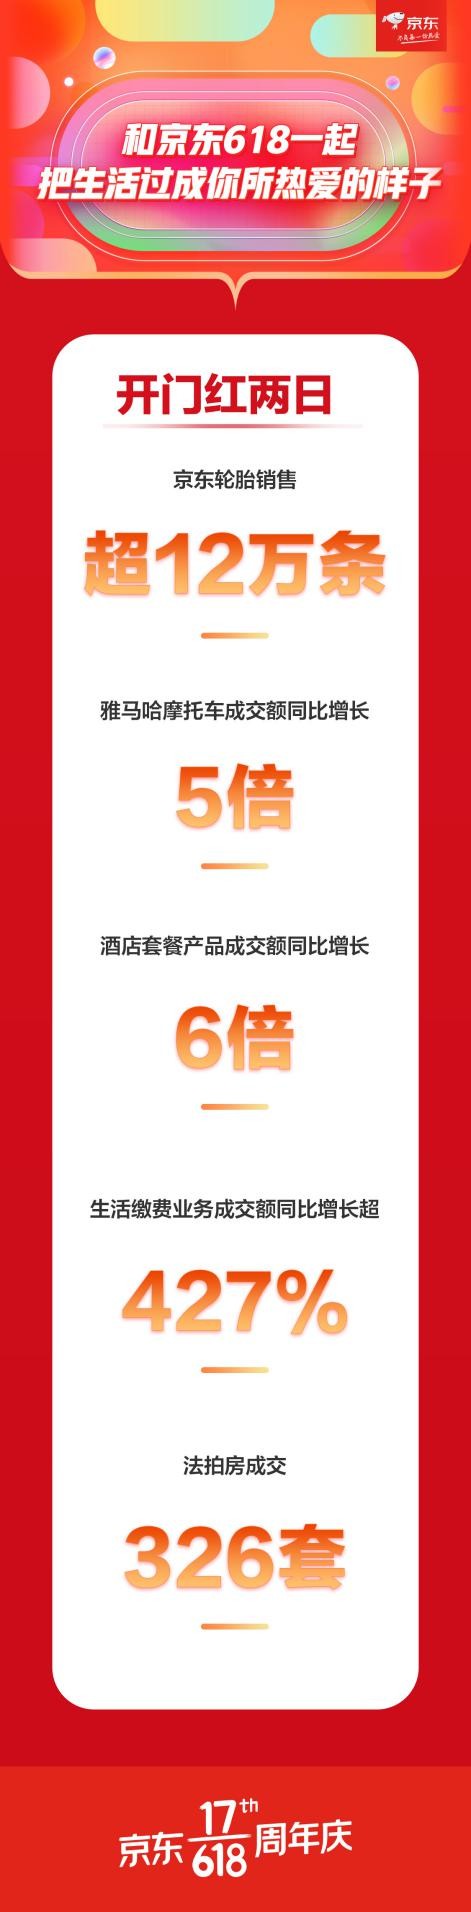 京东618开门红两日战报 生活缴费业务成交额同比增长超427%_行业观察_电商之家